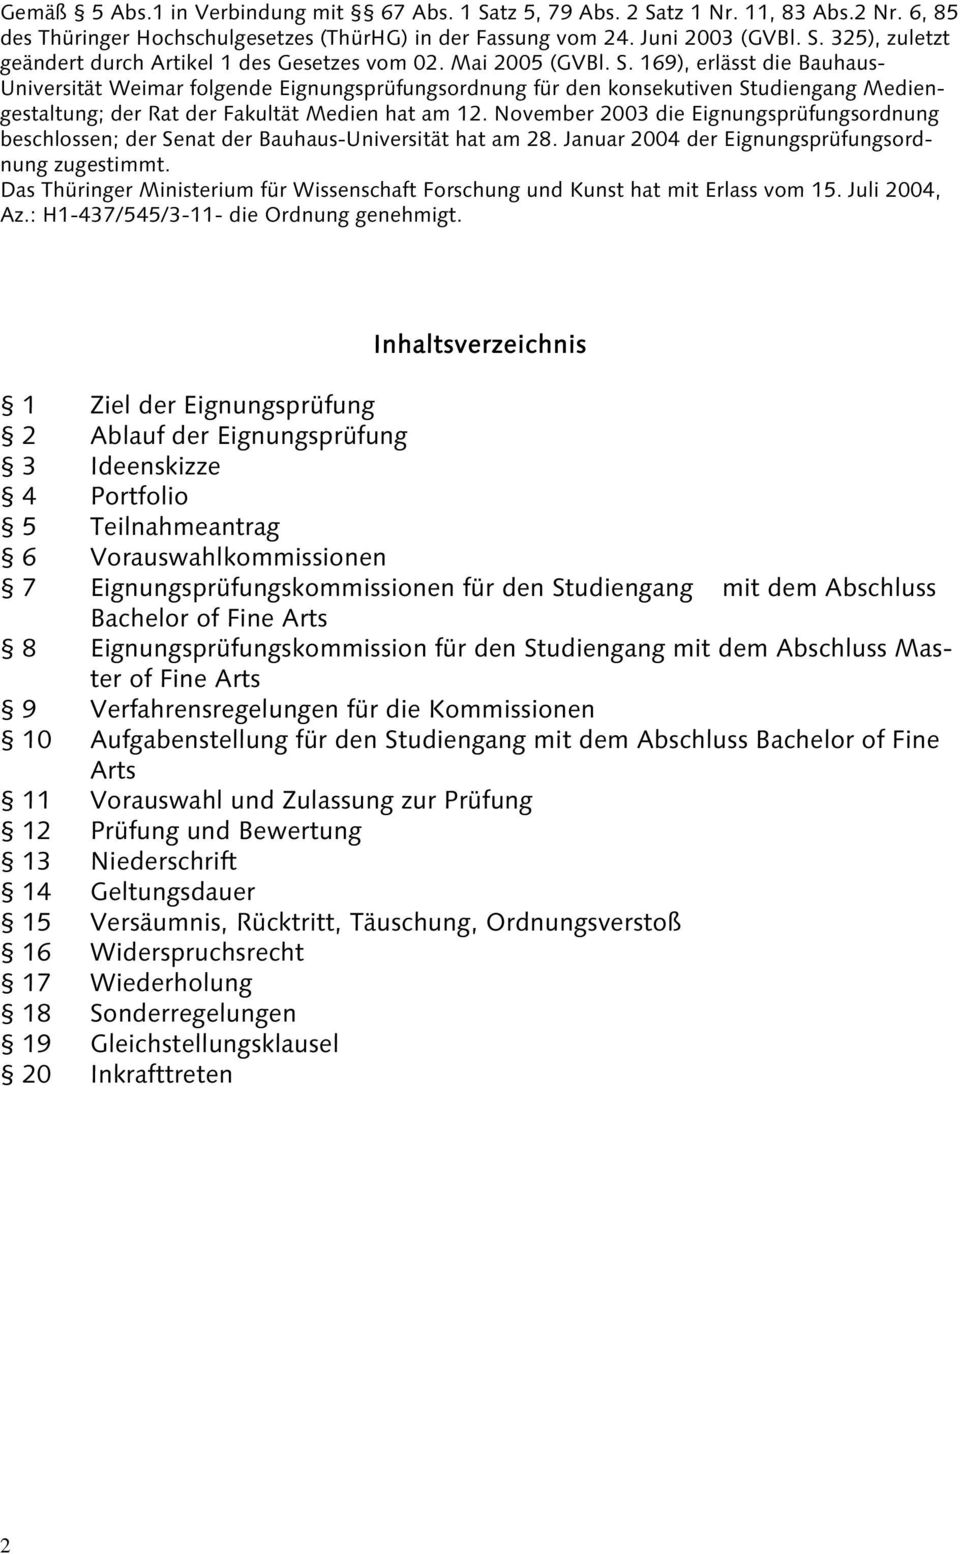 November 2003 die Eignungsprüfungsordnung beschlossen; der Senat der Bauhaus-Universität hat am 28. Januar 2004 der Eignungsprüfungsordnung zugestimmt.